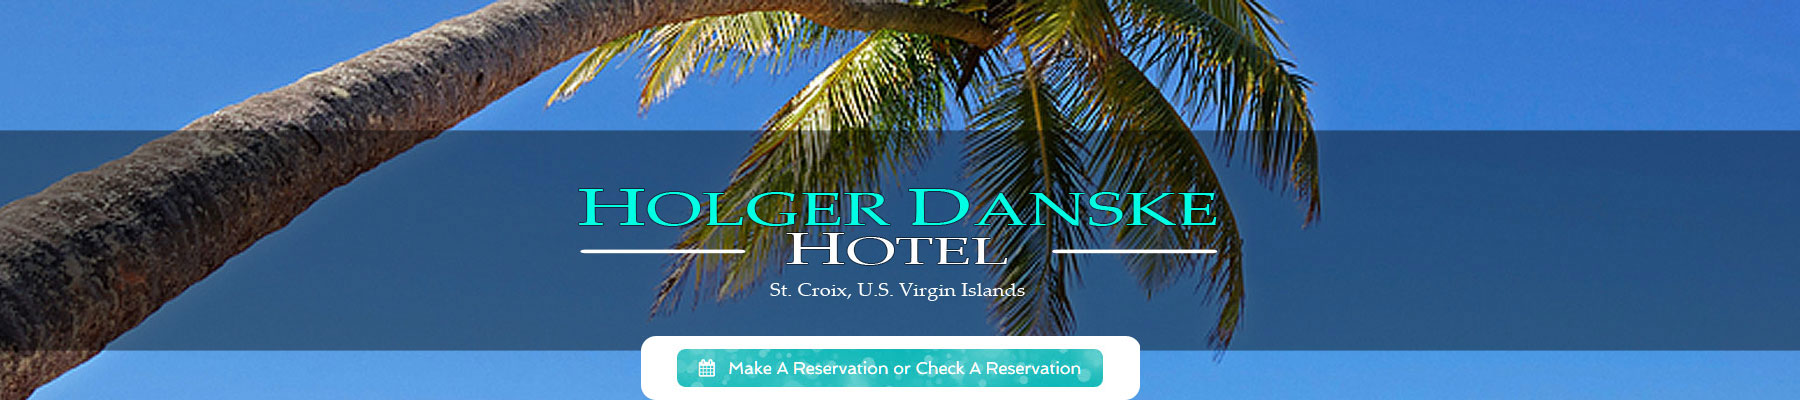 Holger Danske Hotel in St. Croix